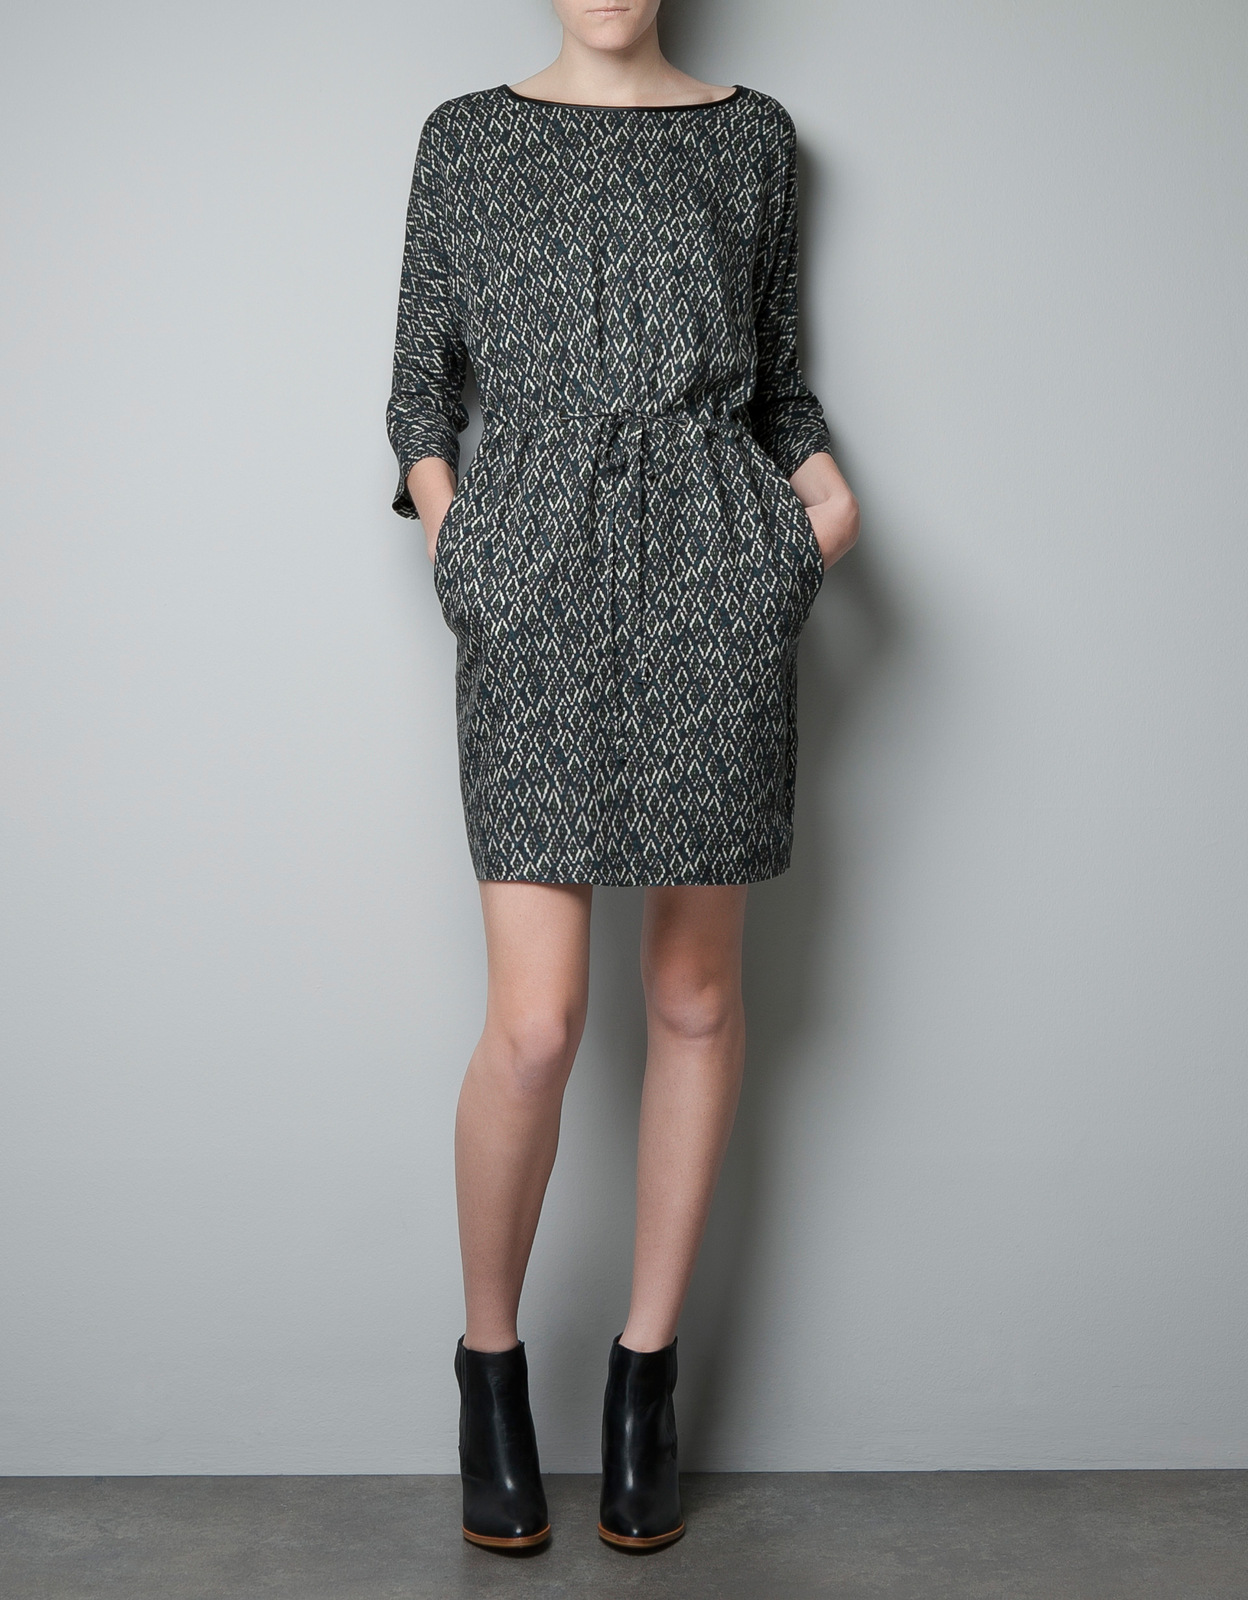 Zara mintás ruha 2012.10.21 fotója